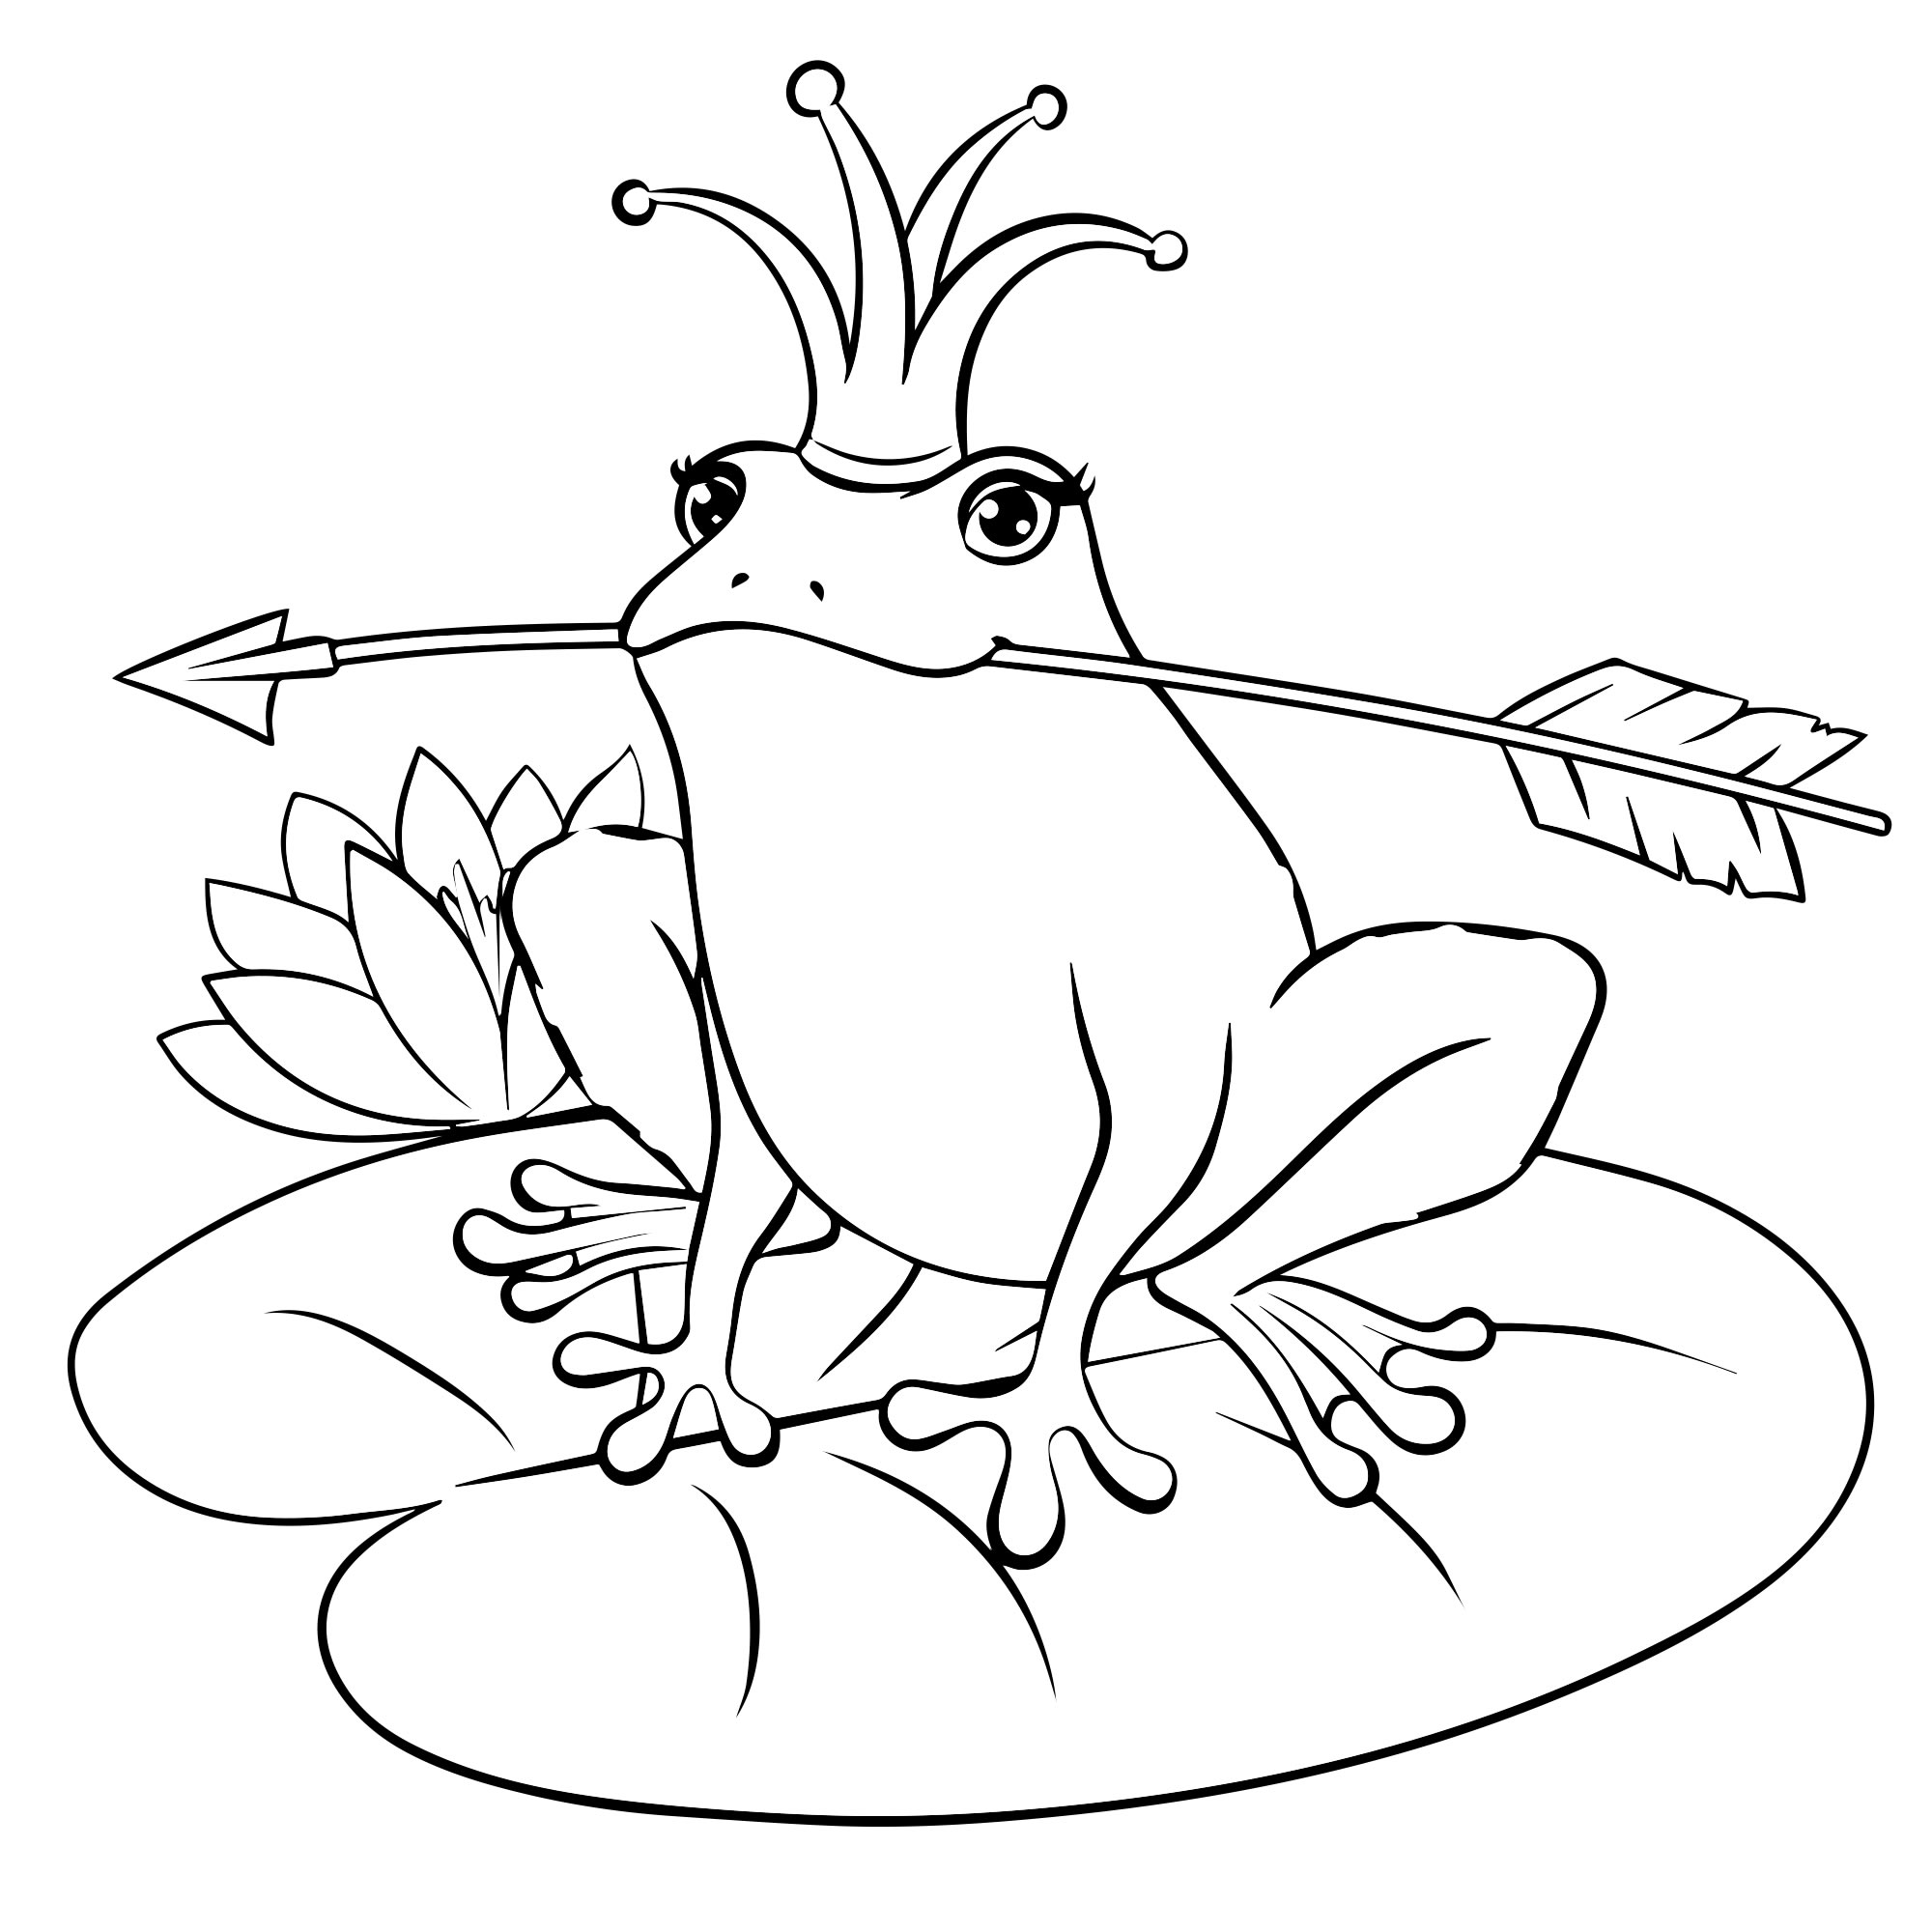 Срисовка сказки Царевна лягушка